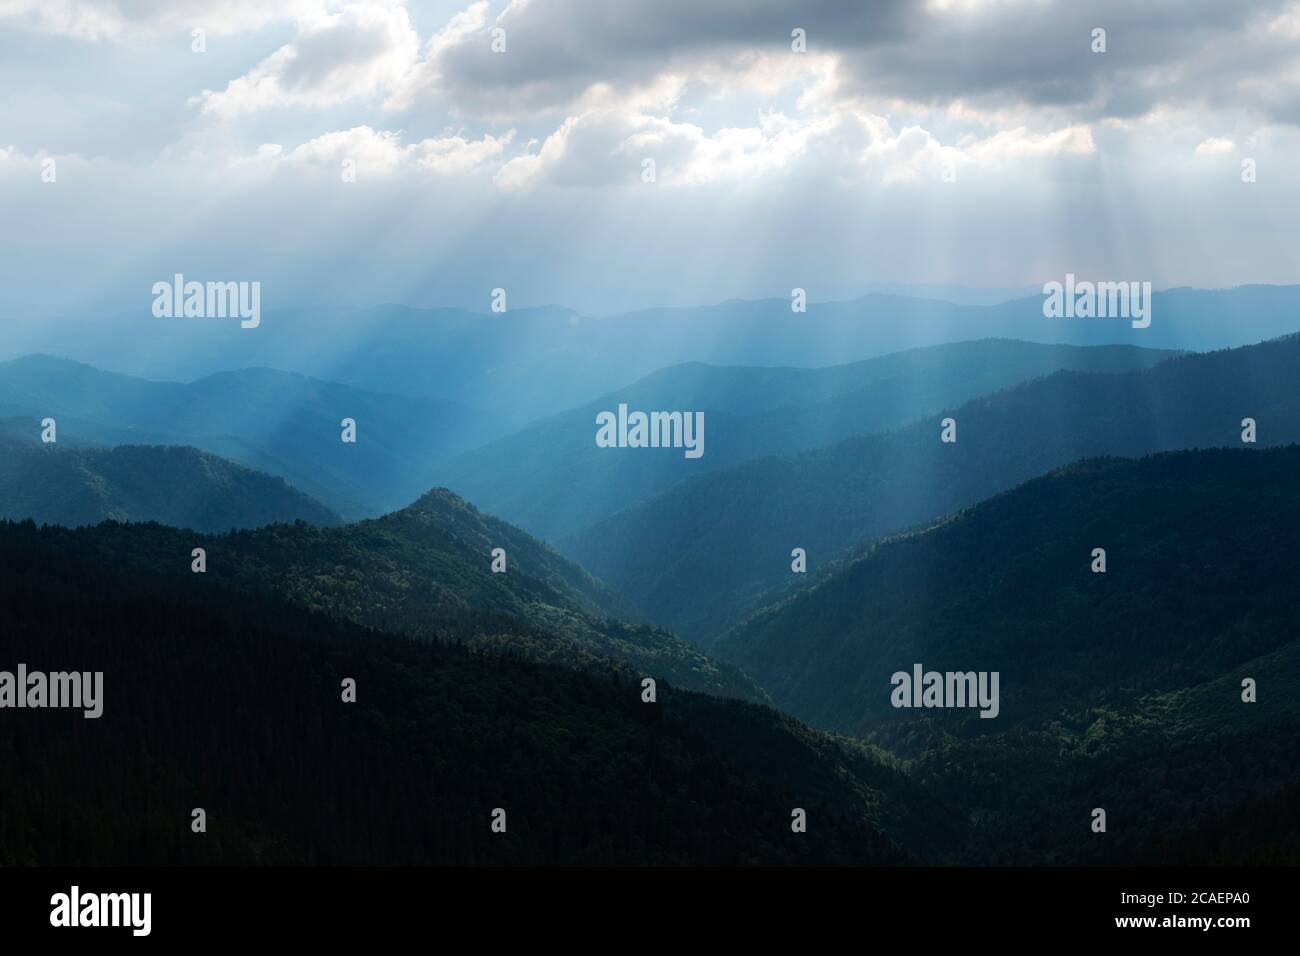 Montagnes pittoresques baignées de soleil dans les montagnes des Carpates, en Ukraine. Photographie de paysage Banque D'Images